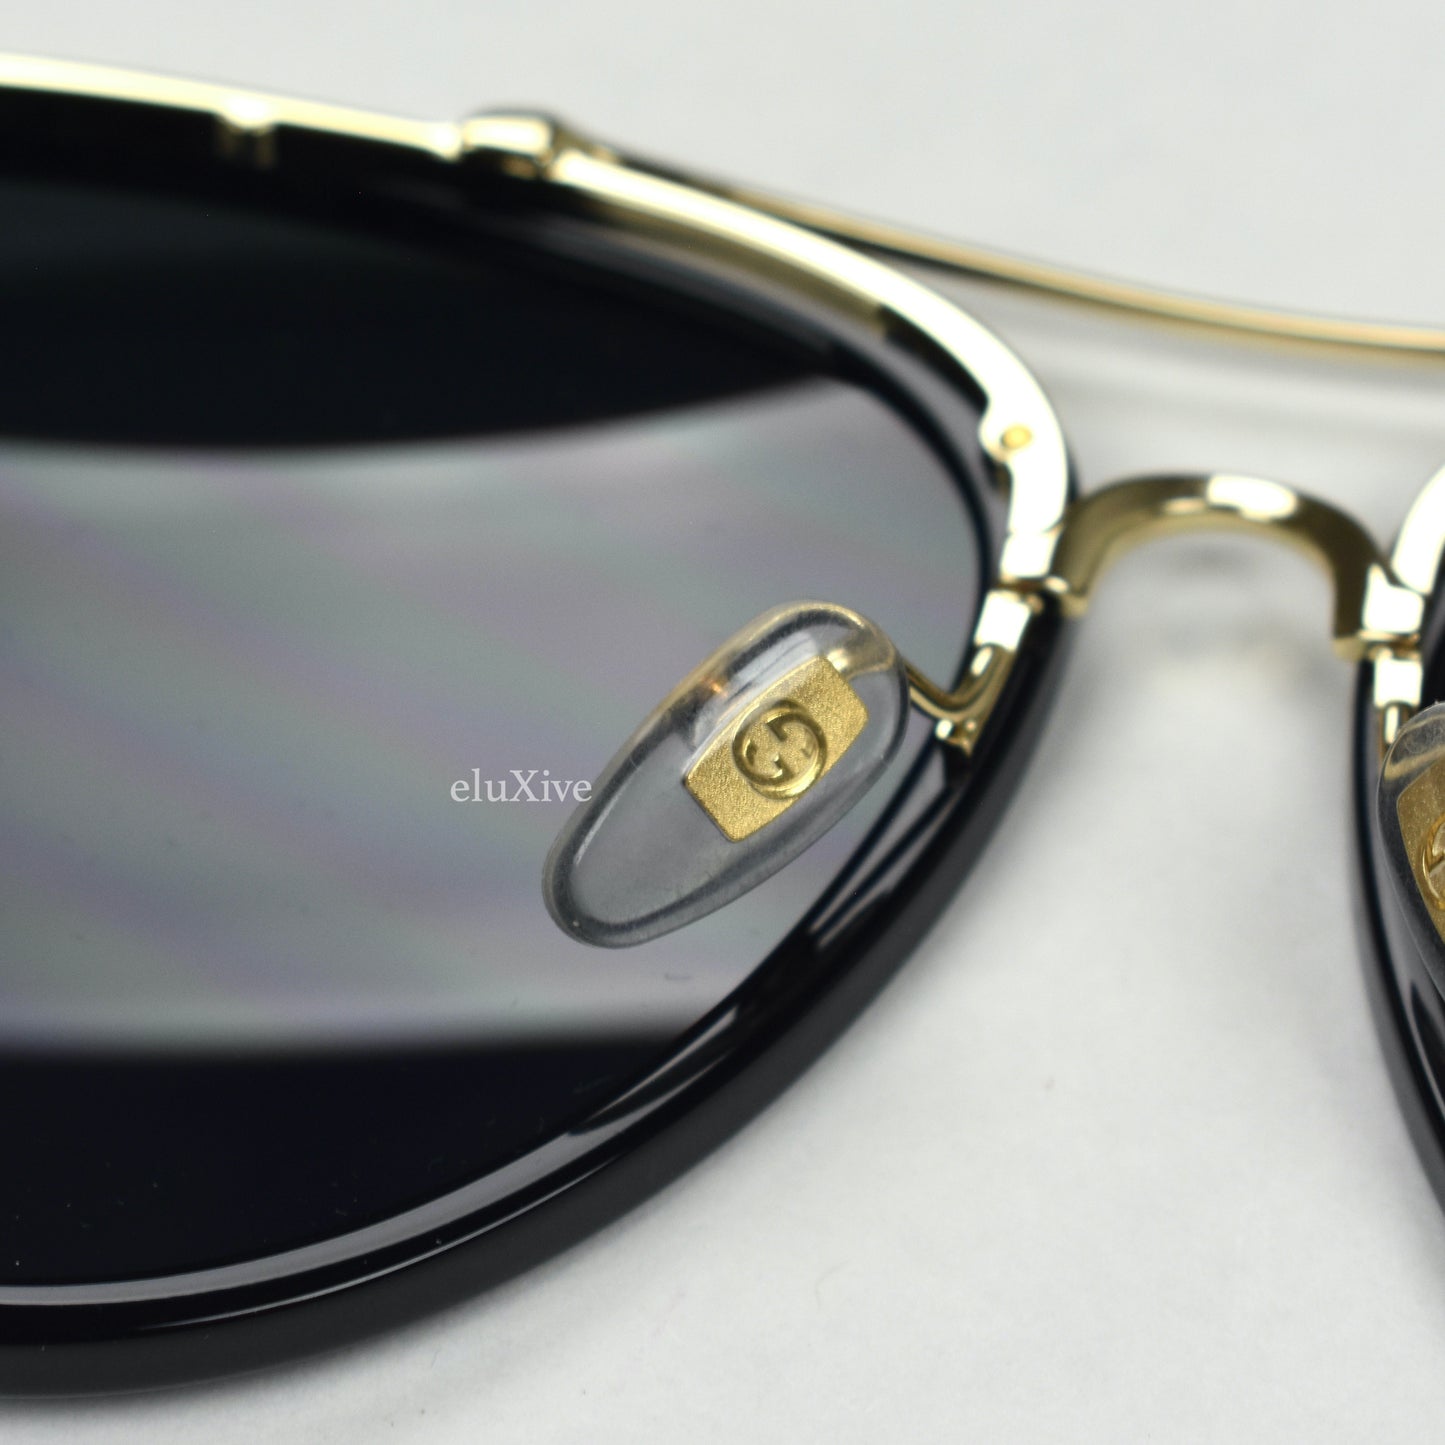 Gucci - GG0062S Black/Gold Aviator Sunglasses